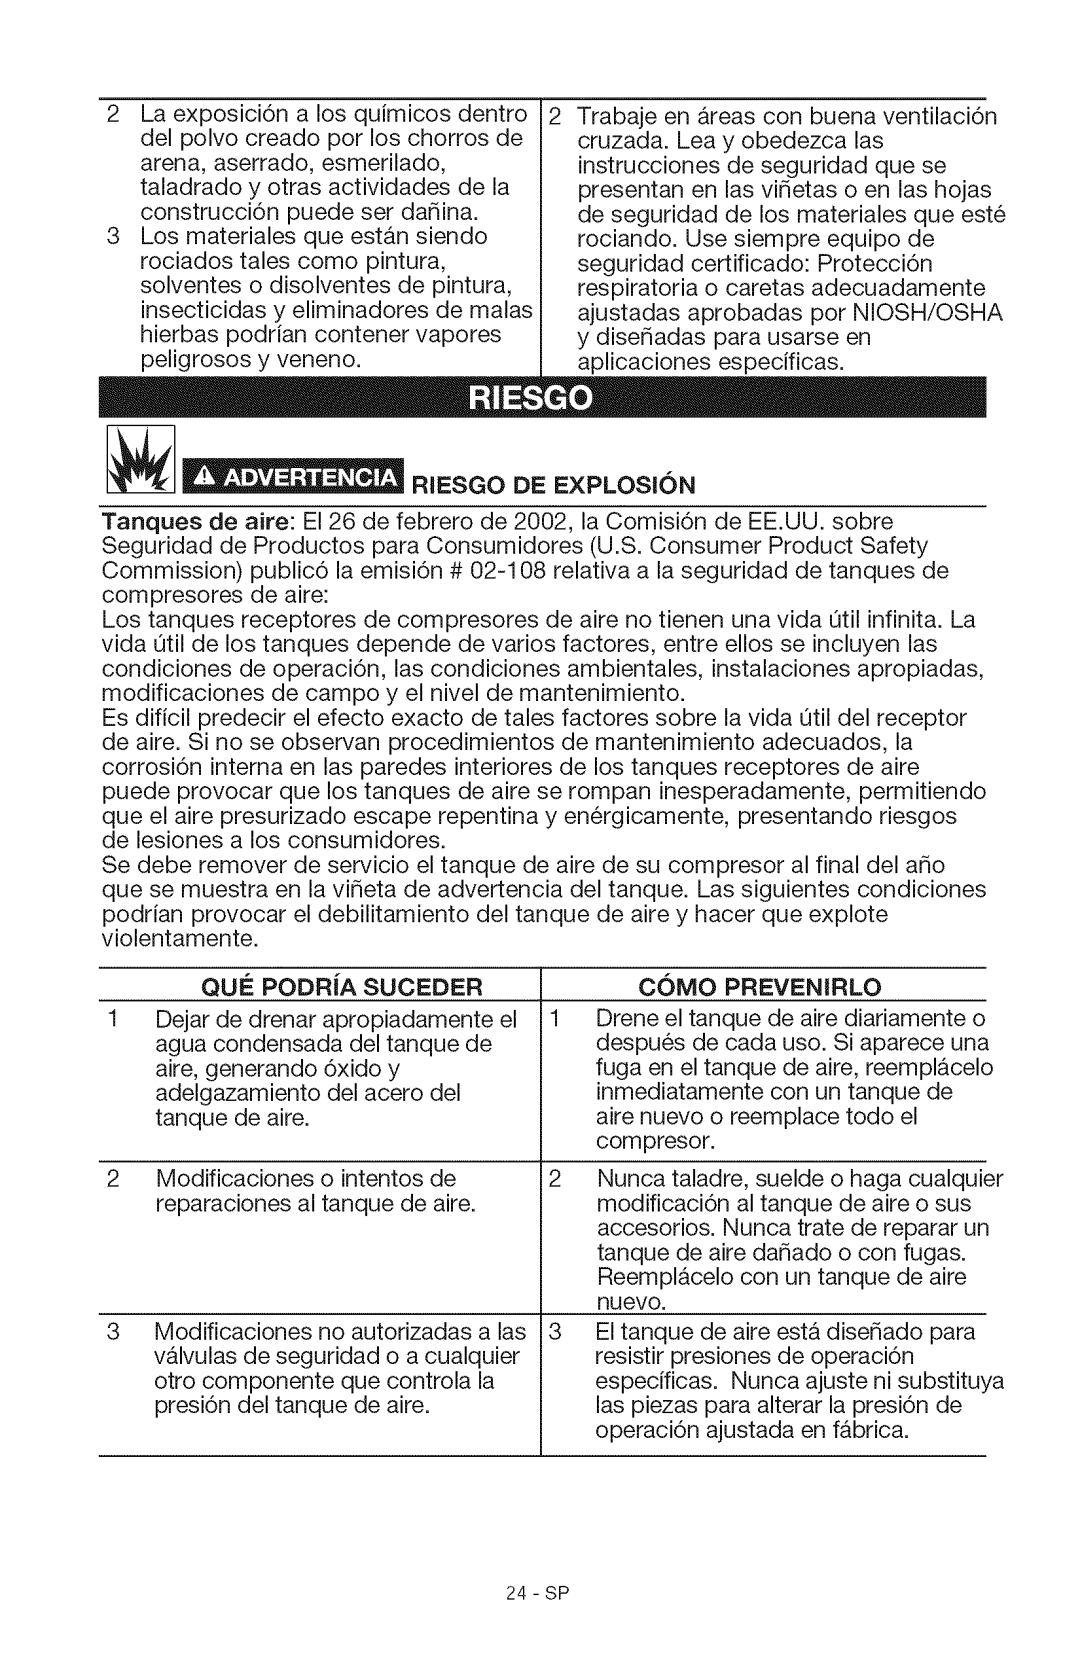 Craftsman 15206 manual Resgo De Explosion, Que Podria Suceder, Como Prevenirlo 